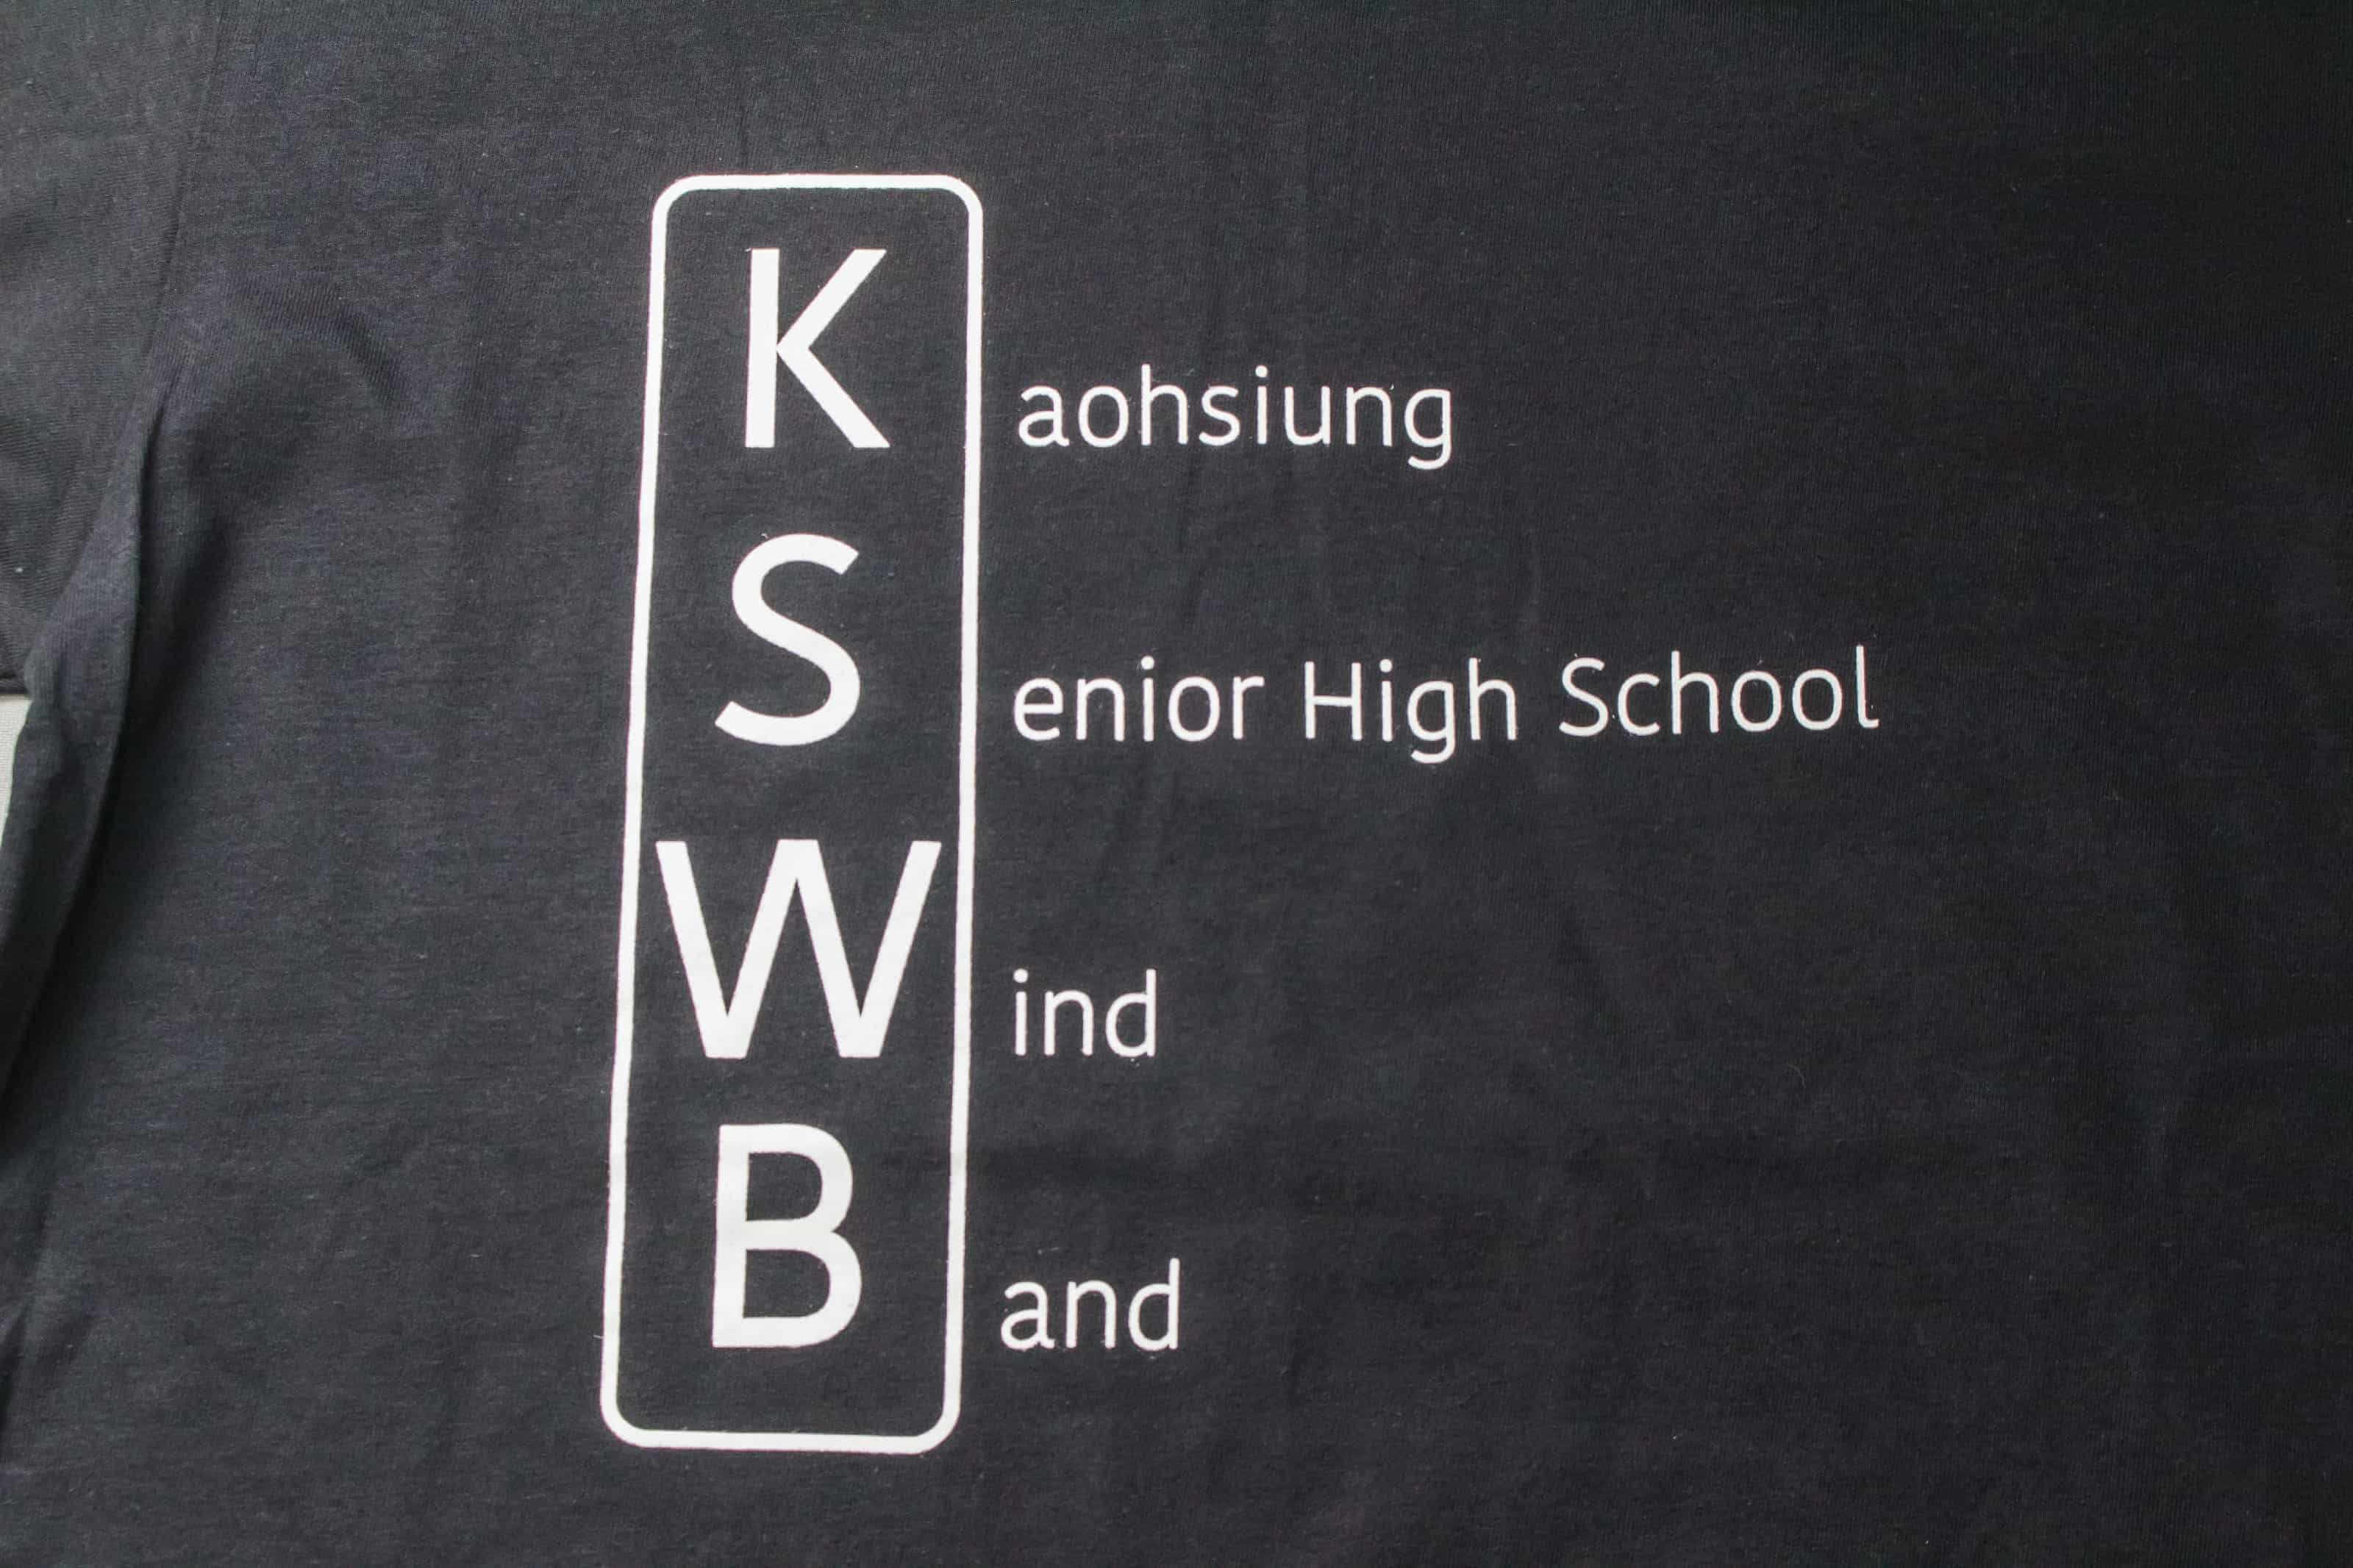 客製化T恤 - KSWB 客製T恤的第2張圖(客製化公司制服、班服製作、團體服製作等示意或作品圖)